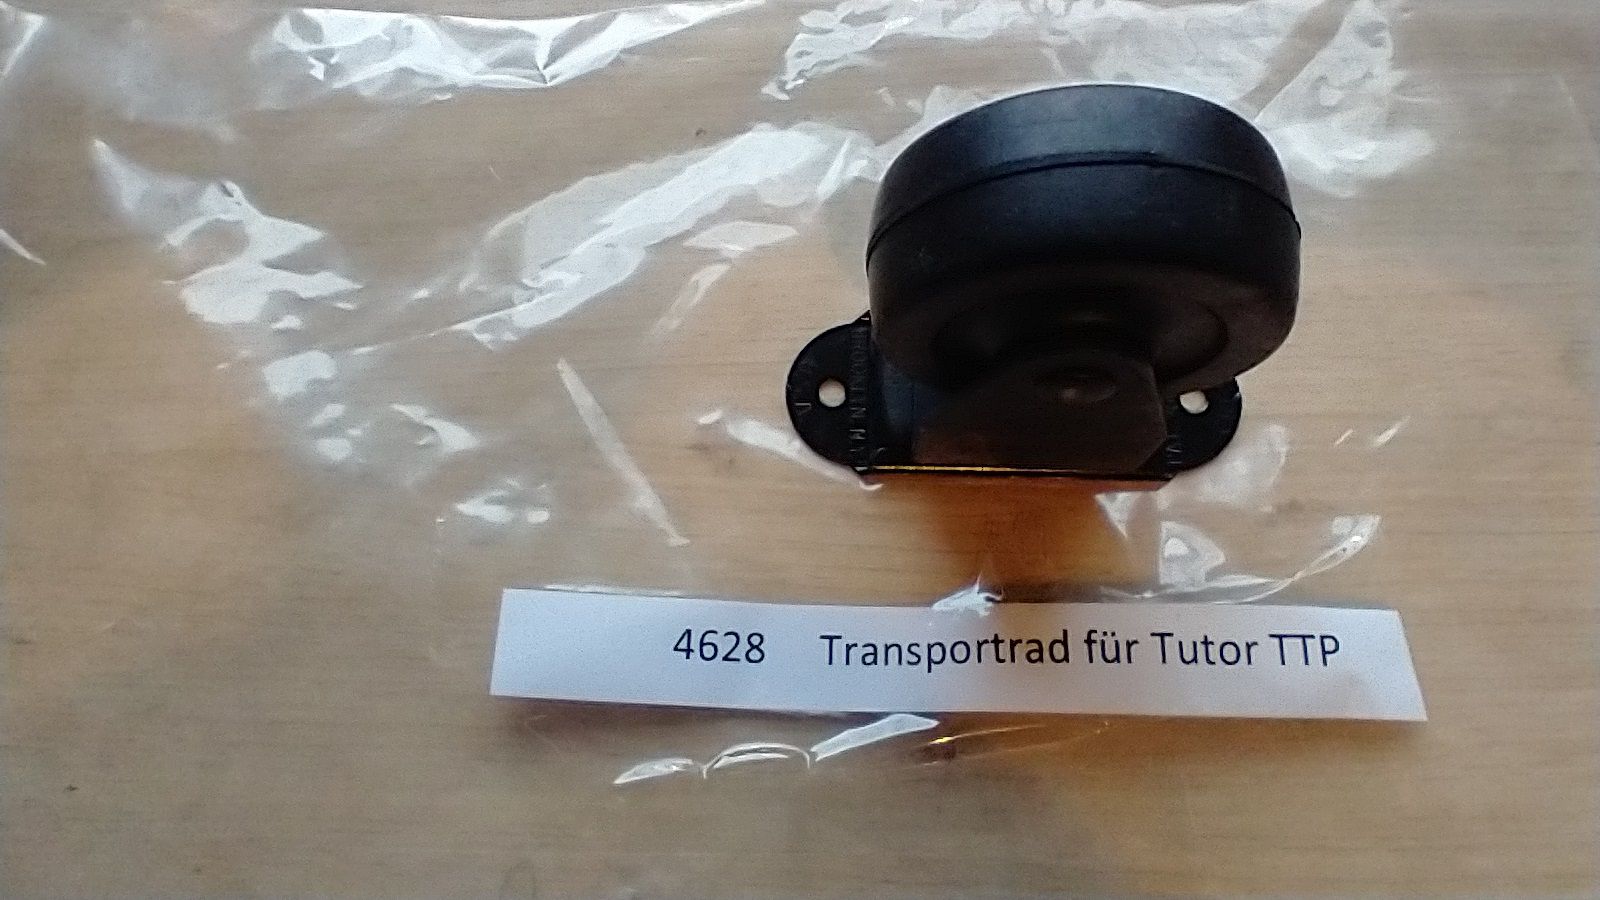 Transportrad für Tutor TTP